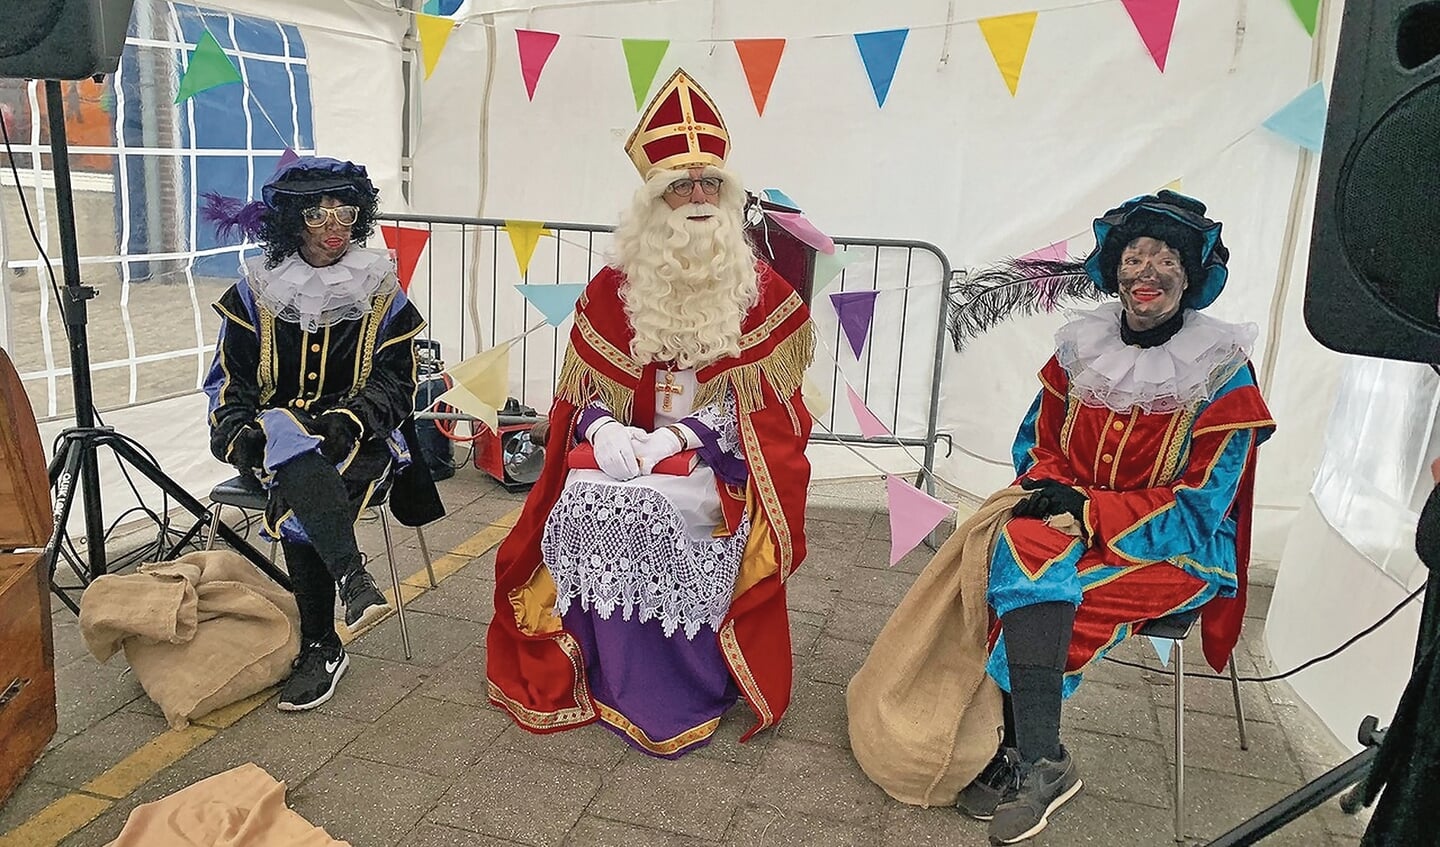 Bij de Howiblo kreeg Sinterklaas een royale ontvangst in een tent buiten op het schoolplein.